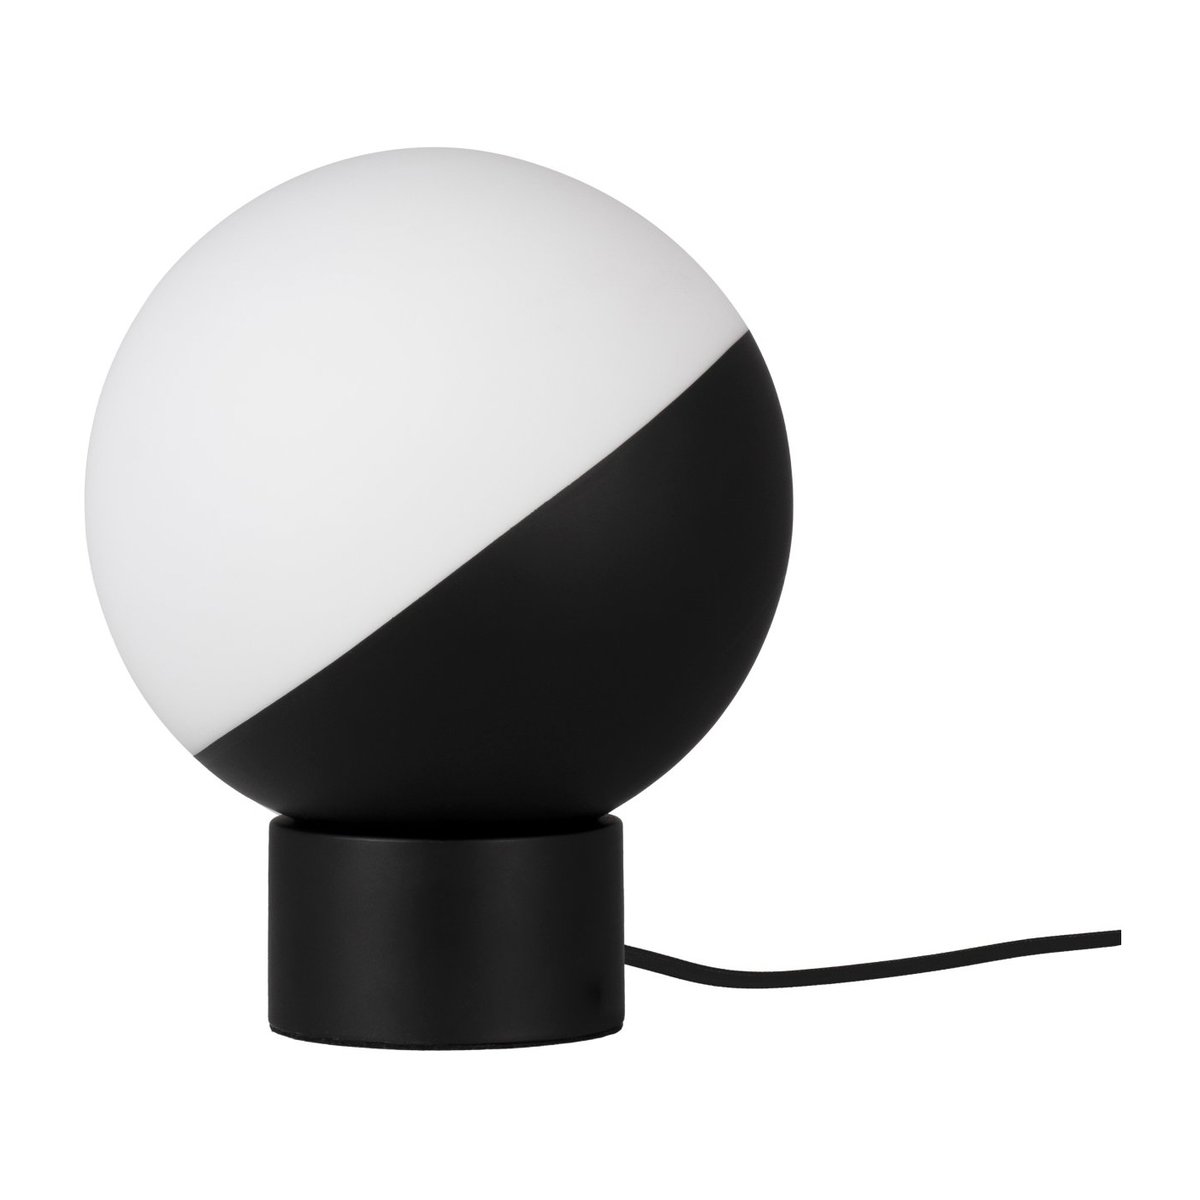 Bilde av Globen Lighting Contur bordlampe Ø 20 cm Svart-hvit